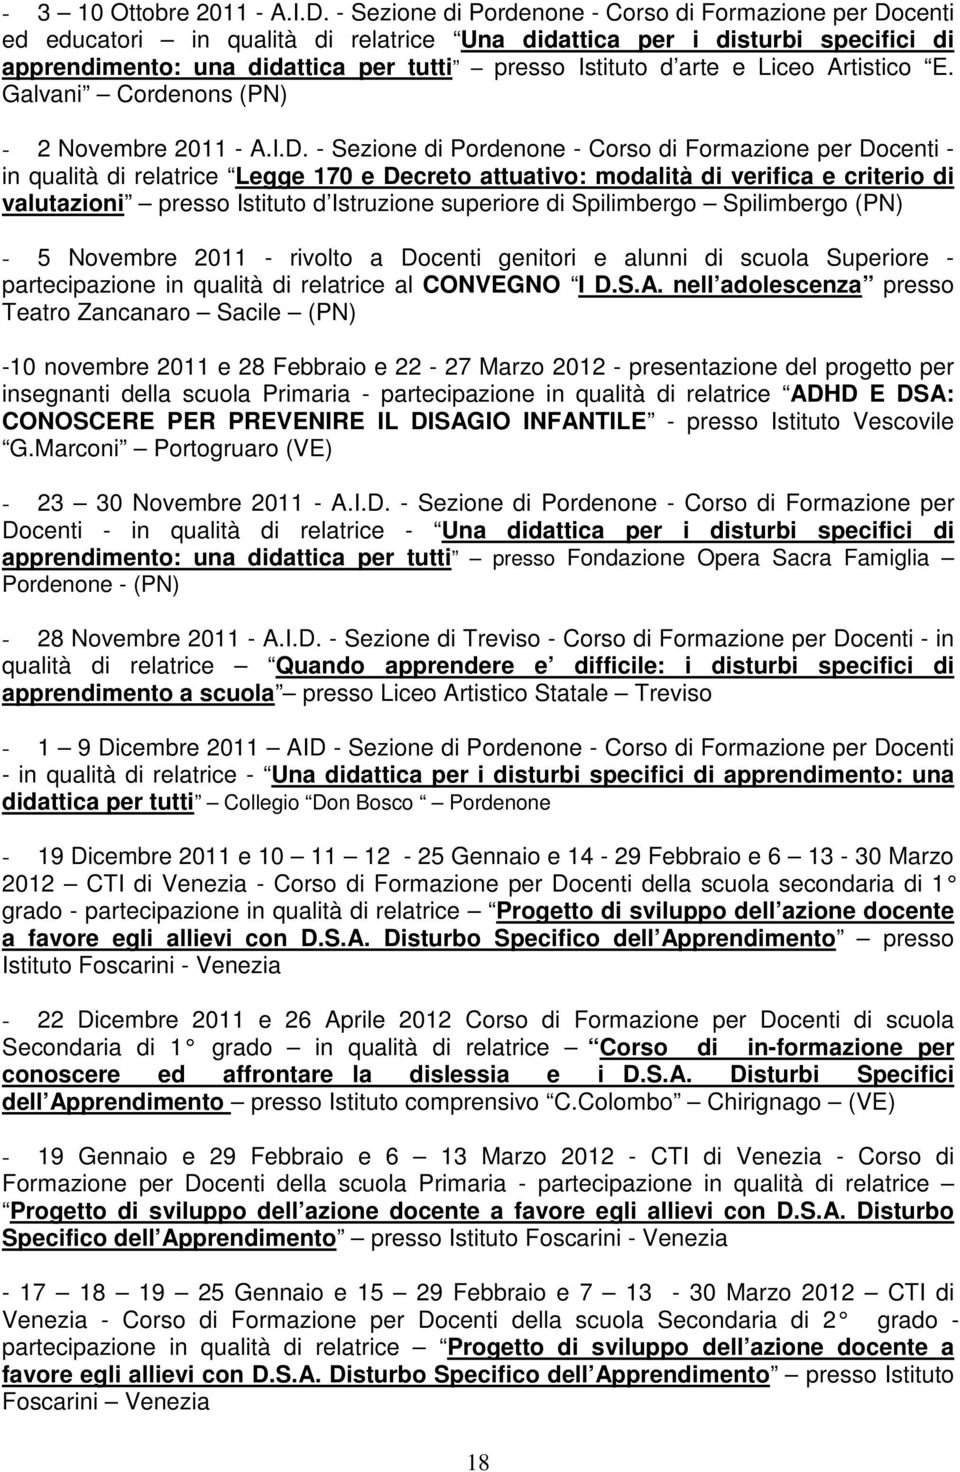 Liceo Artistico E. Galvani Cordenons (PN) - 2 Novembre 2011 - A.I.D.